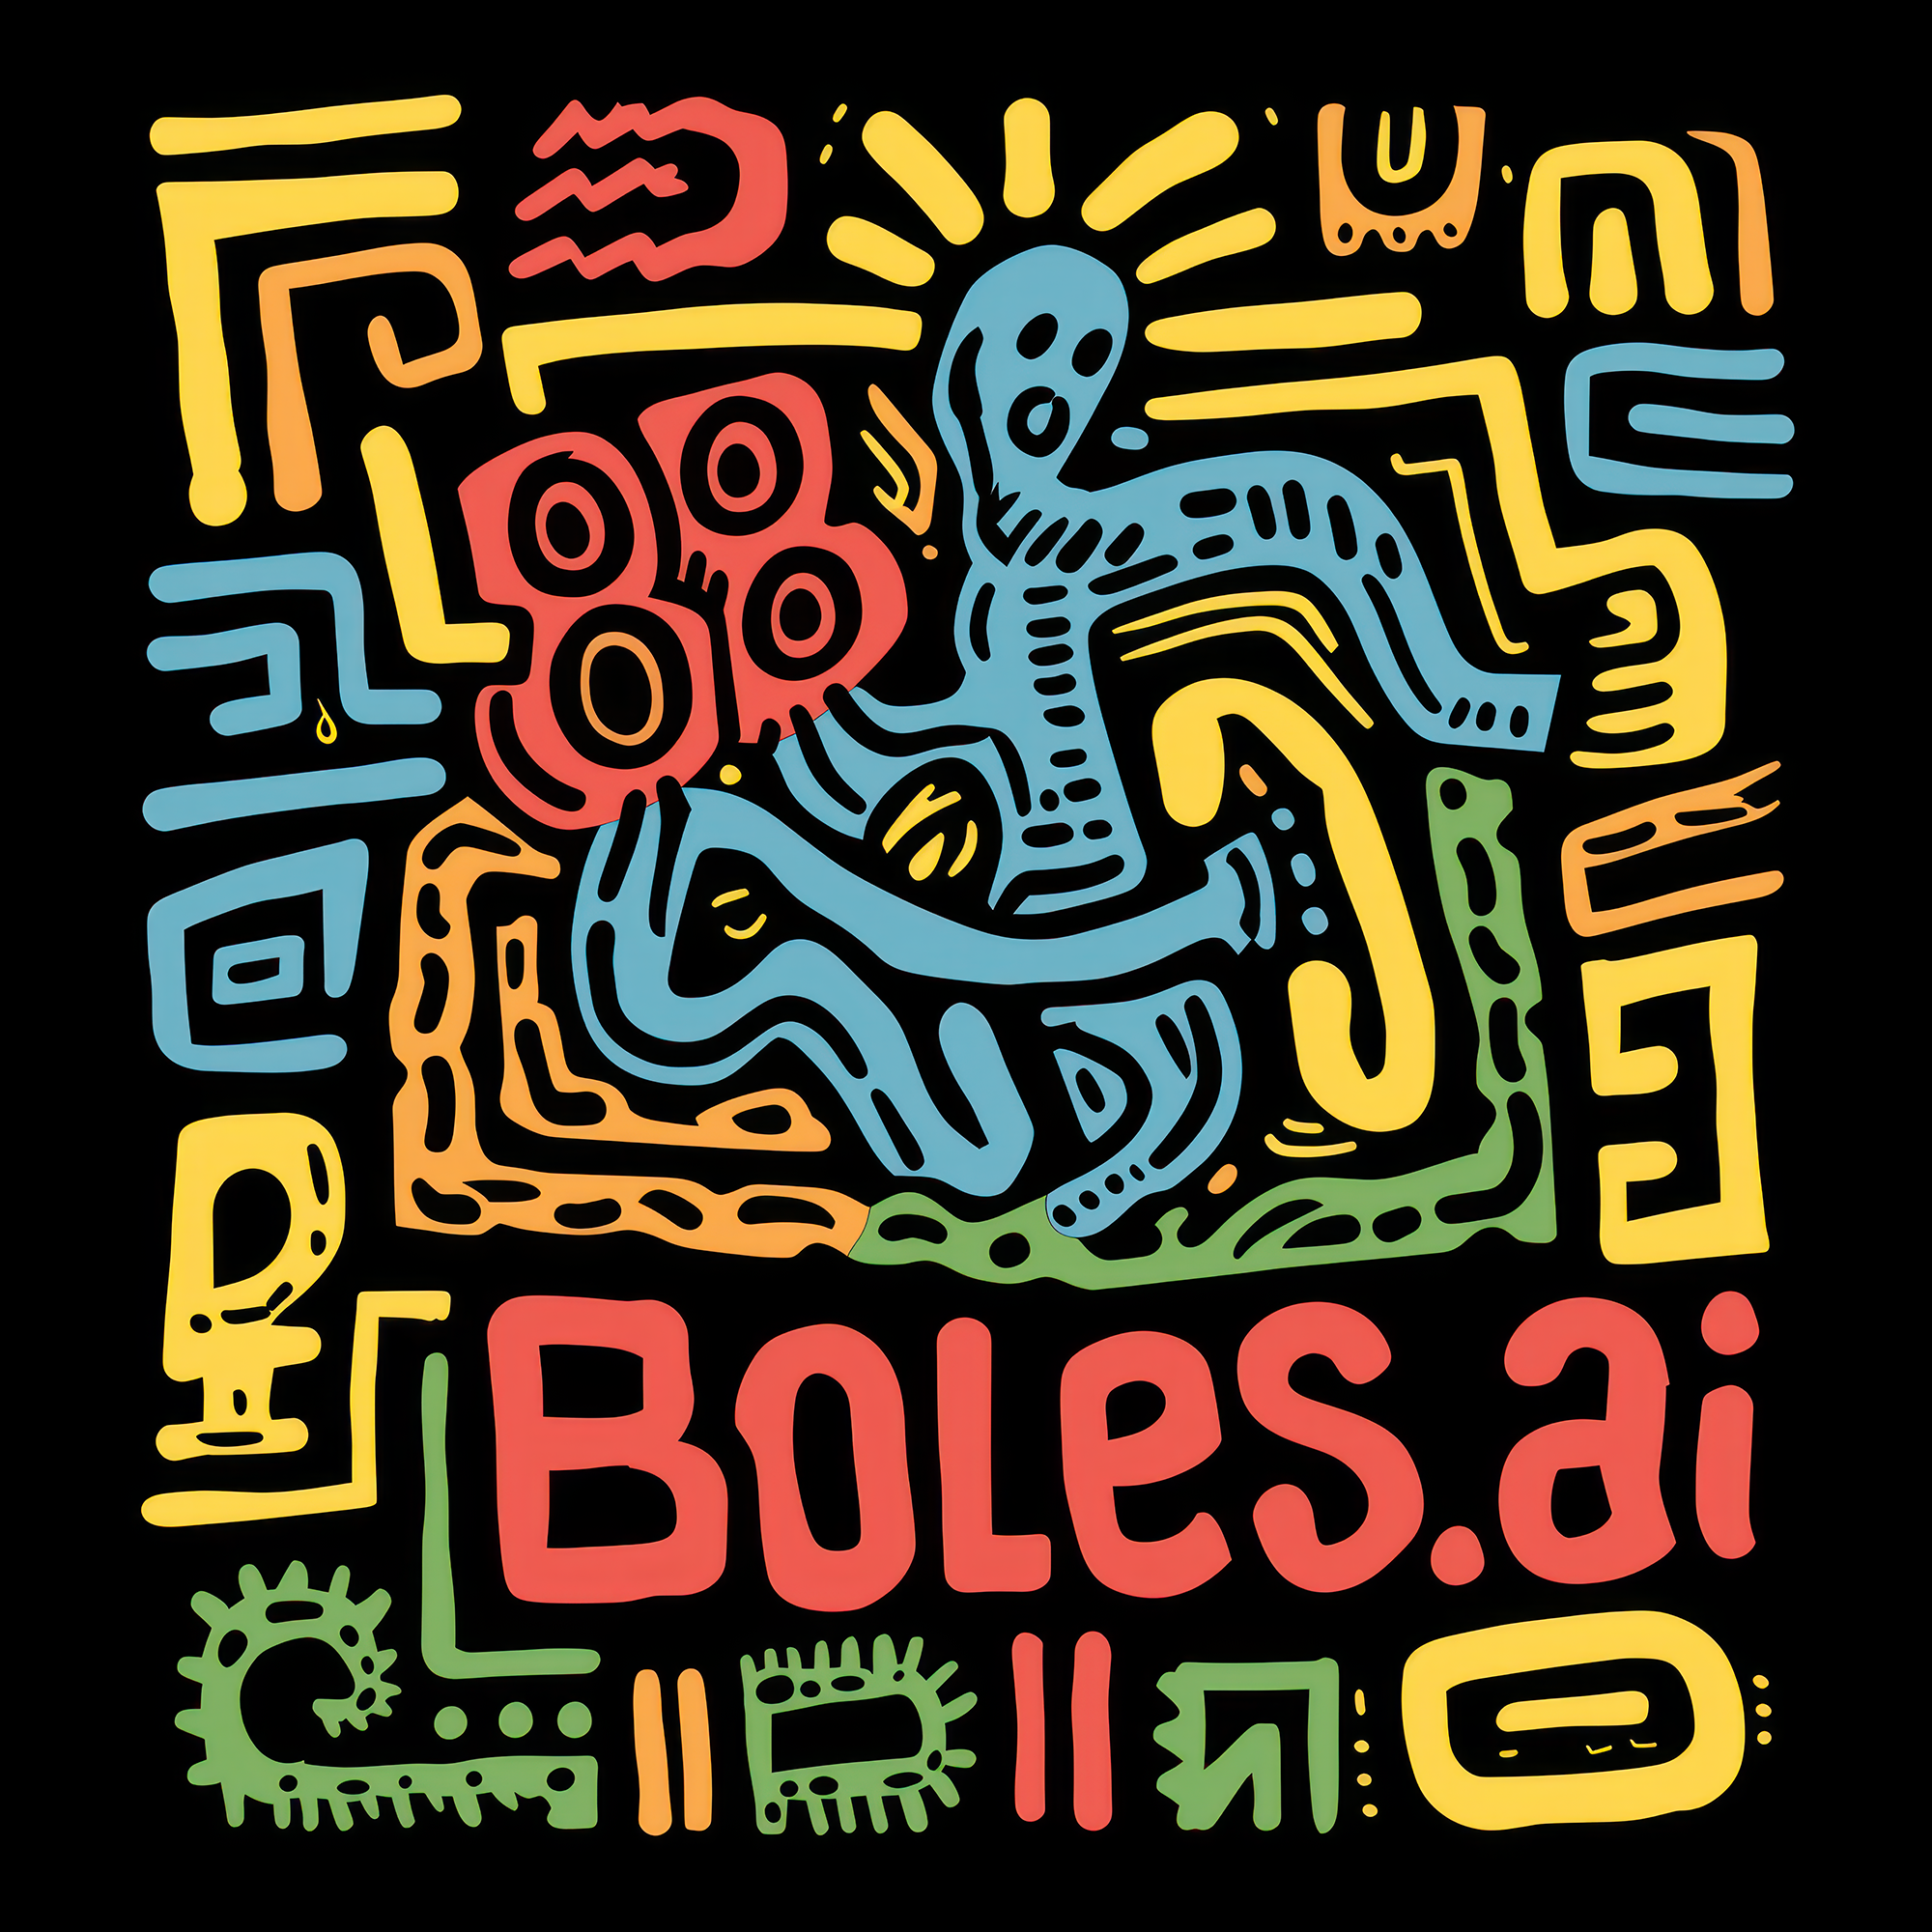 Inspired Boles.ai Logo!